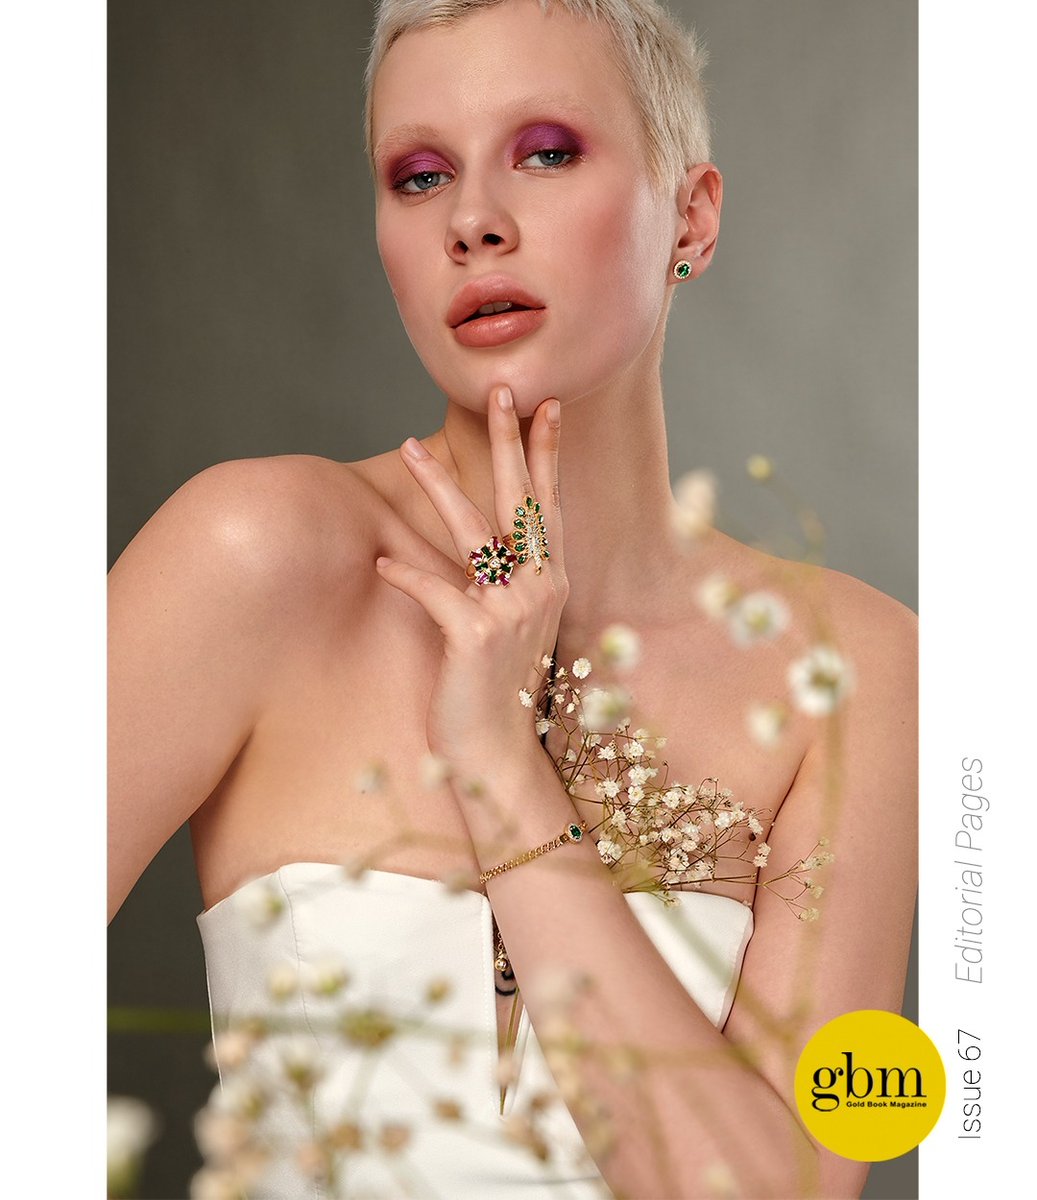 #editorialshoot #image #consept #style⁠ #jewelleryshoot #fashionshoot #67thissue #IstanbulJewelryShow⁠ #uzmanjewelry #enameljewelry #jewelrystyle
#SerkanAhlatJewellery #GoldBookMagazine #finejewelry